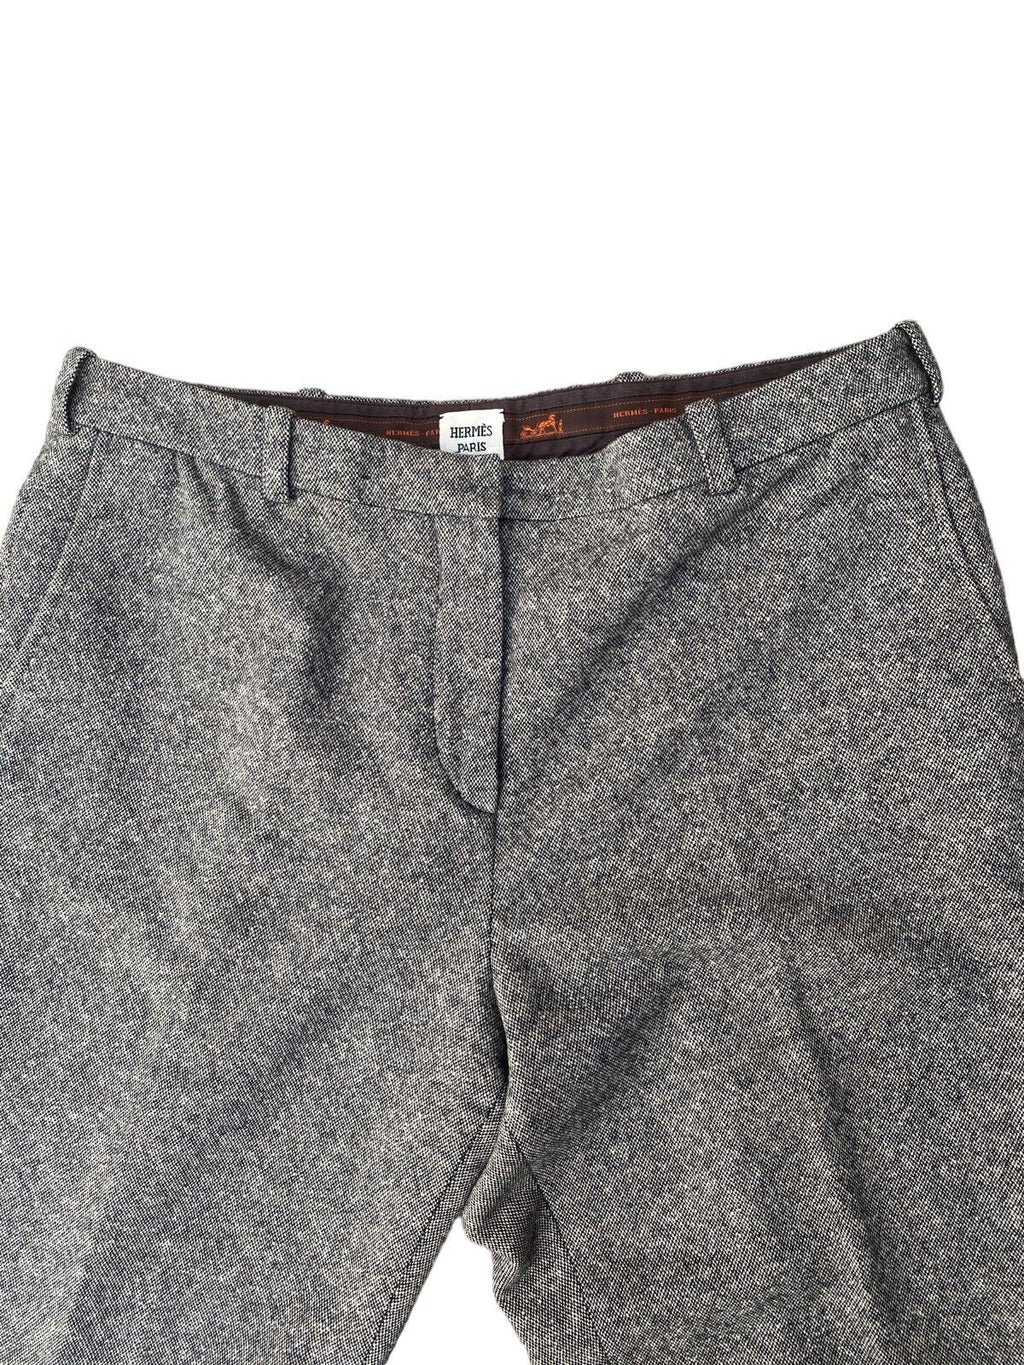 Grey Cashmere Pants  Size 42 fits US 31 - 32